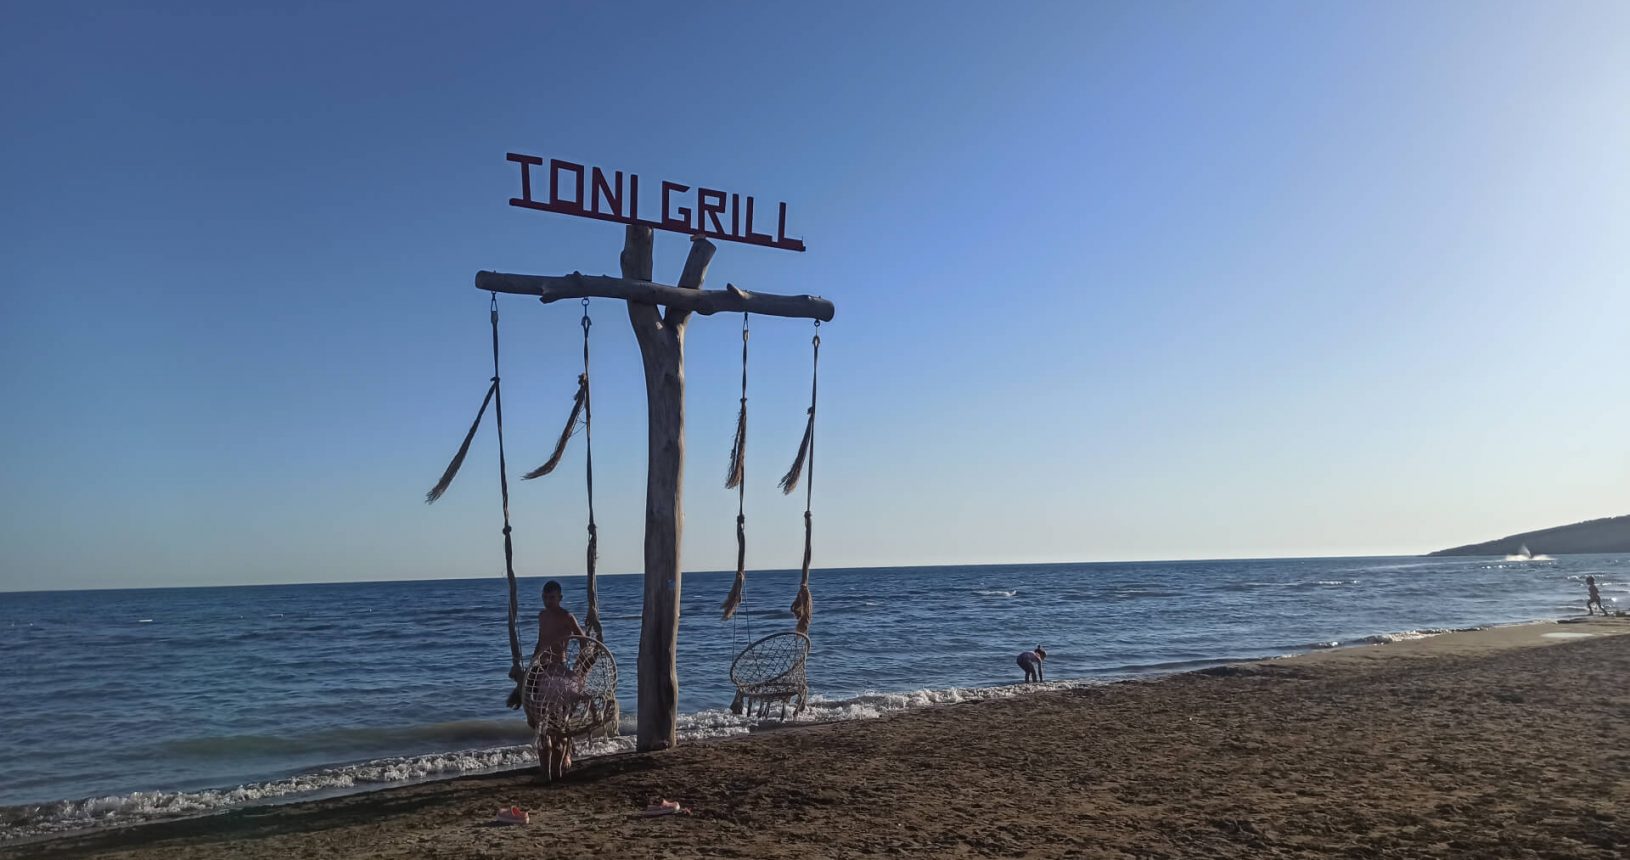 Toni Grill Beach swing